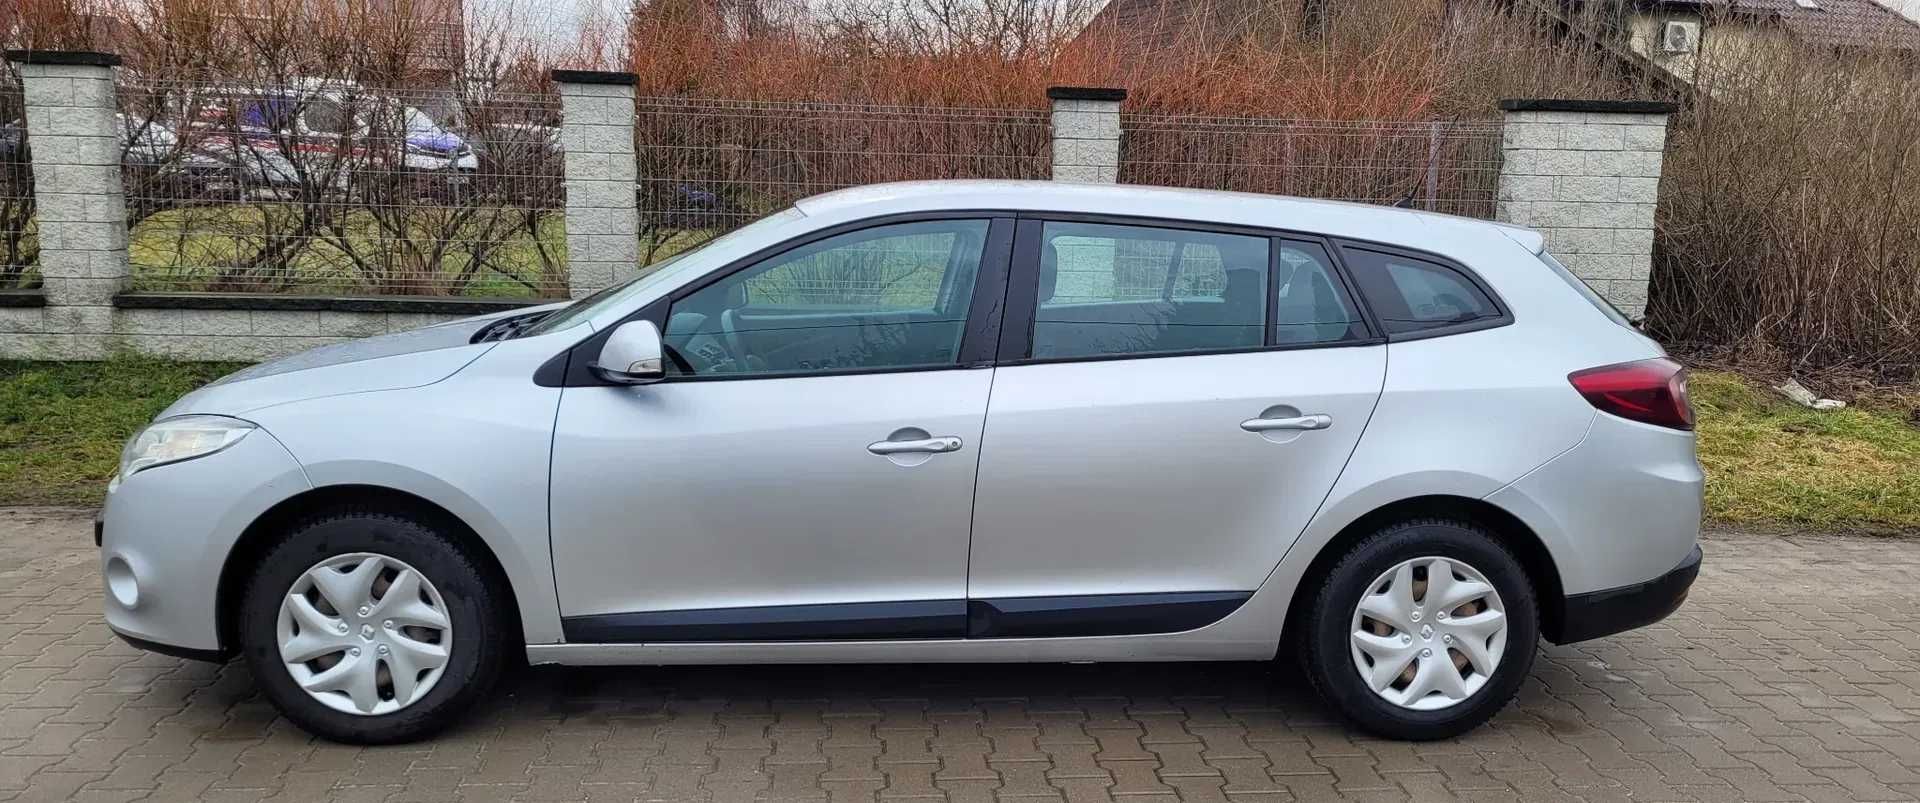 Wypożyczalnia Ford Focus / Renault Megane kombi 70 zł